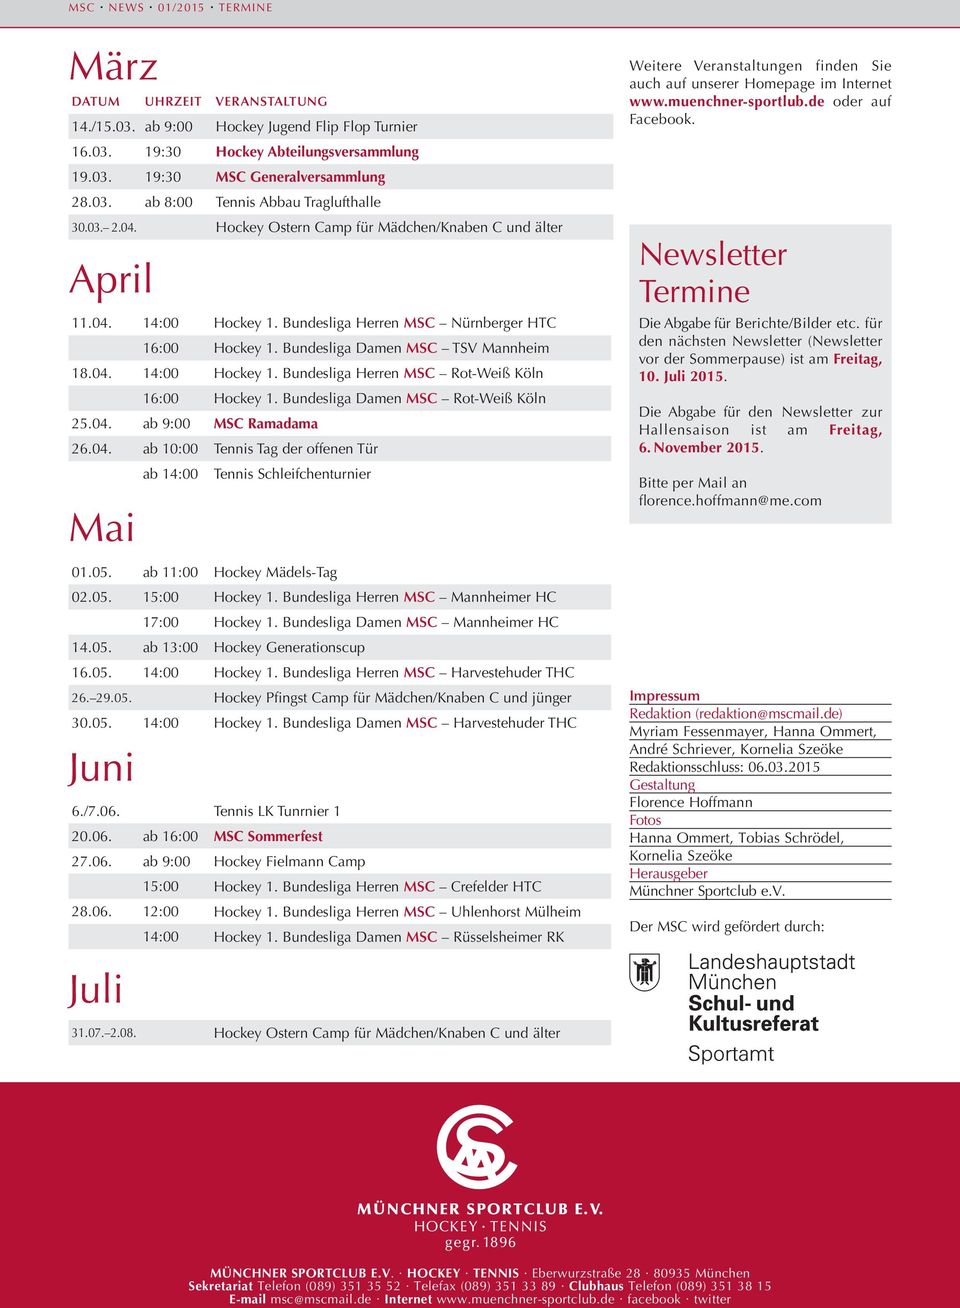 Bundesliga Damen MSC Rot-Weiß Köln 25.04. ab 9:00 MSC Ramadama 26.04. ab 10:00 Tennis Tag der offenen Tür ab 14:00 Tennis Schleifchenturnier Mai Weitere Veranstaltungen finden Sie auch auf unserer Homepage im Internet www.